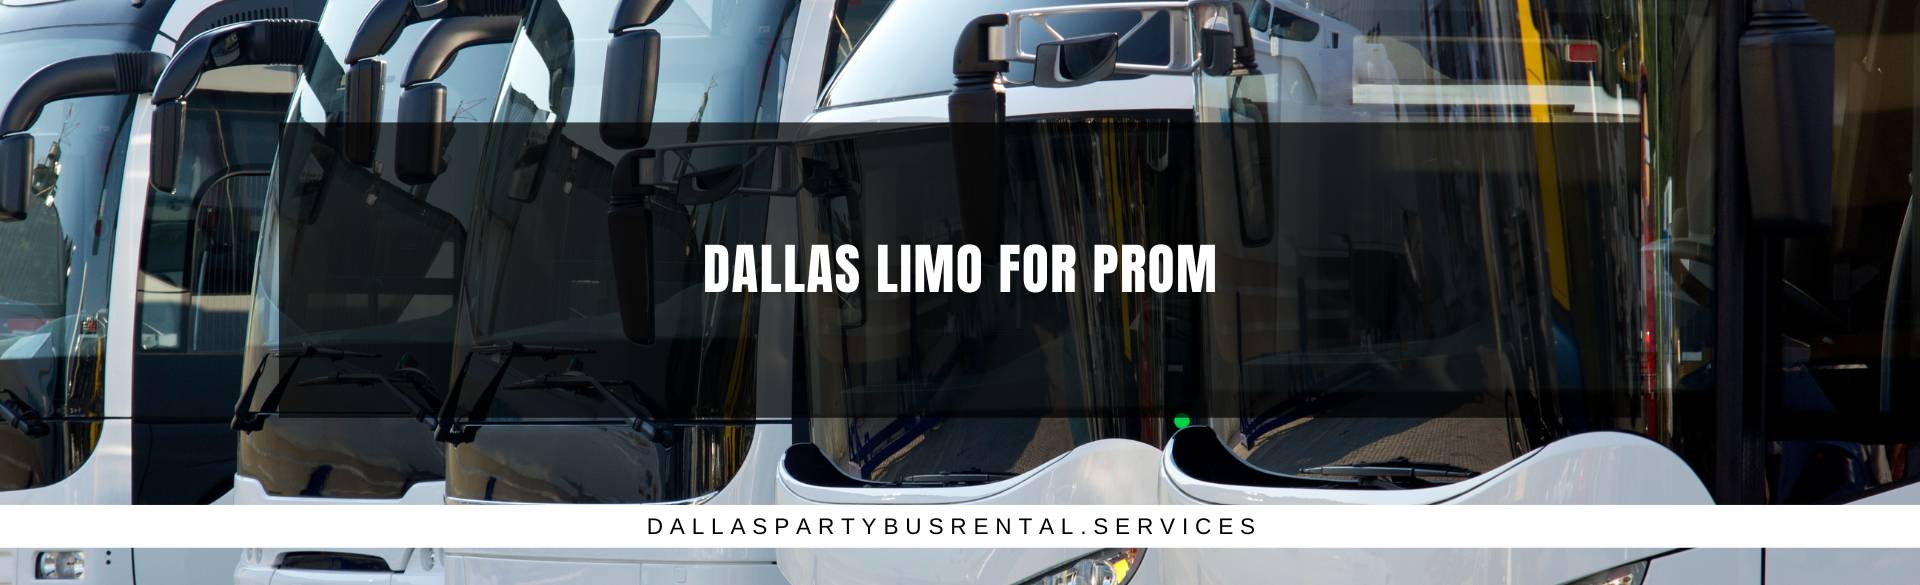 Dallas Limo for Prom